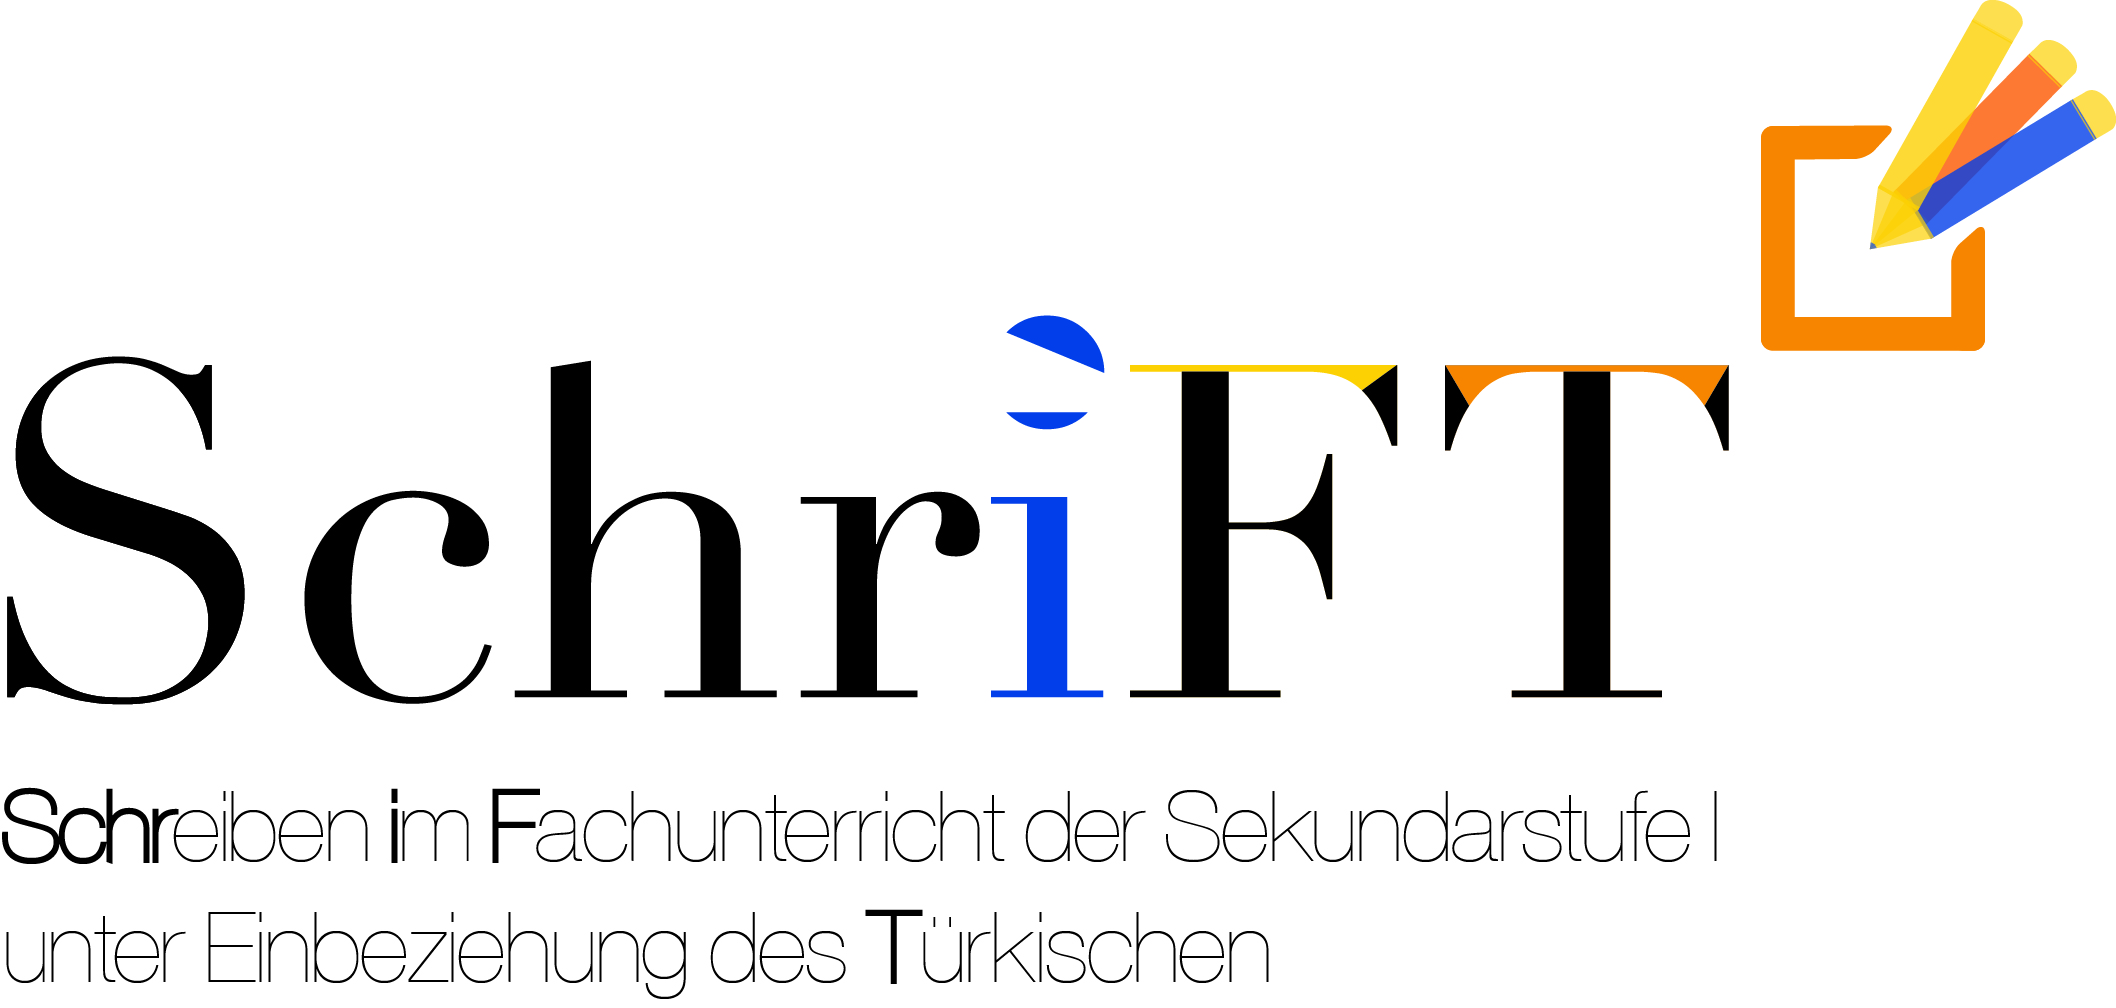 SchriFT_Logo